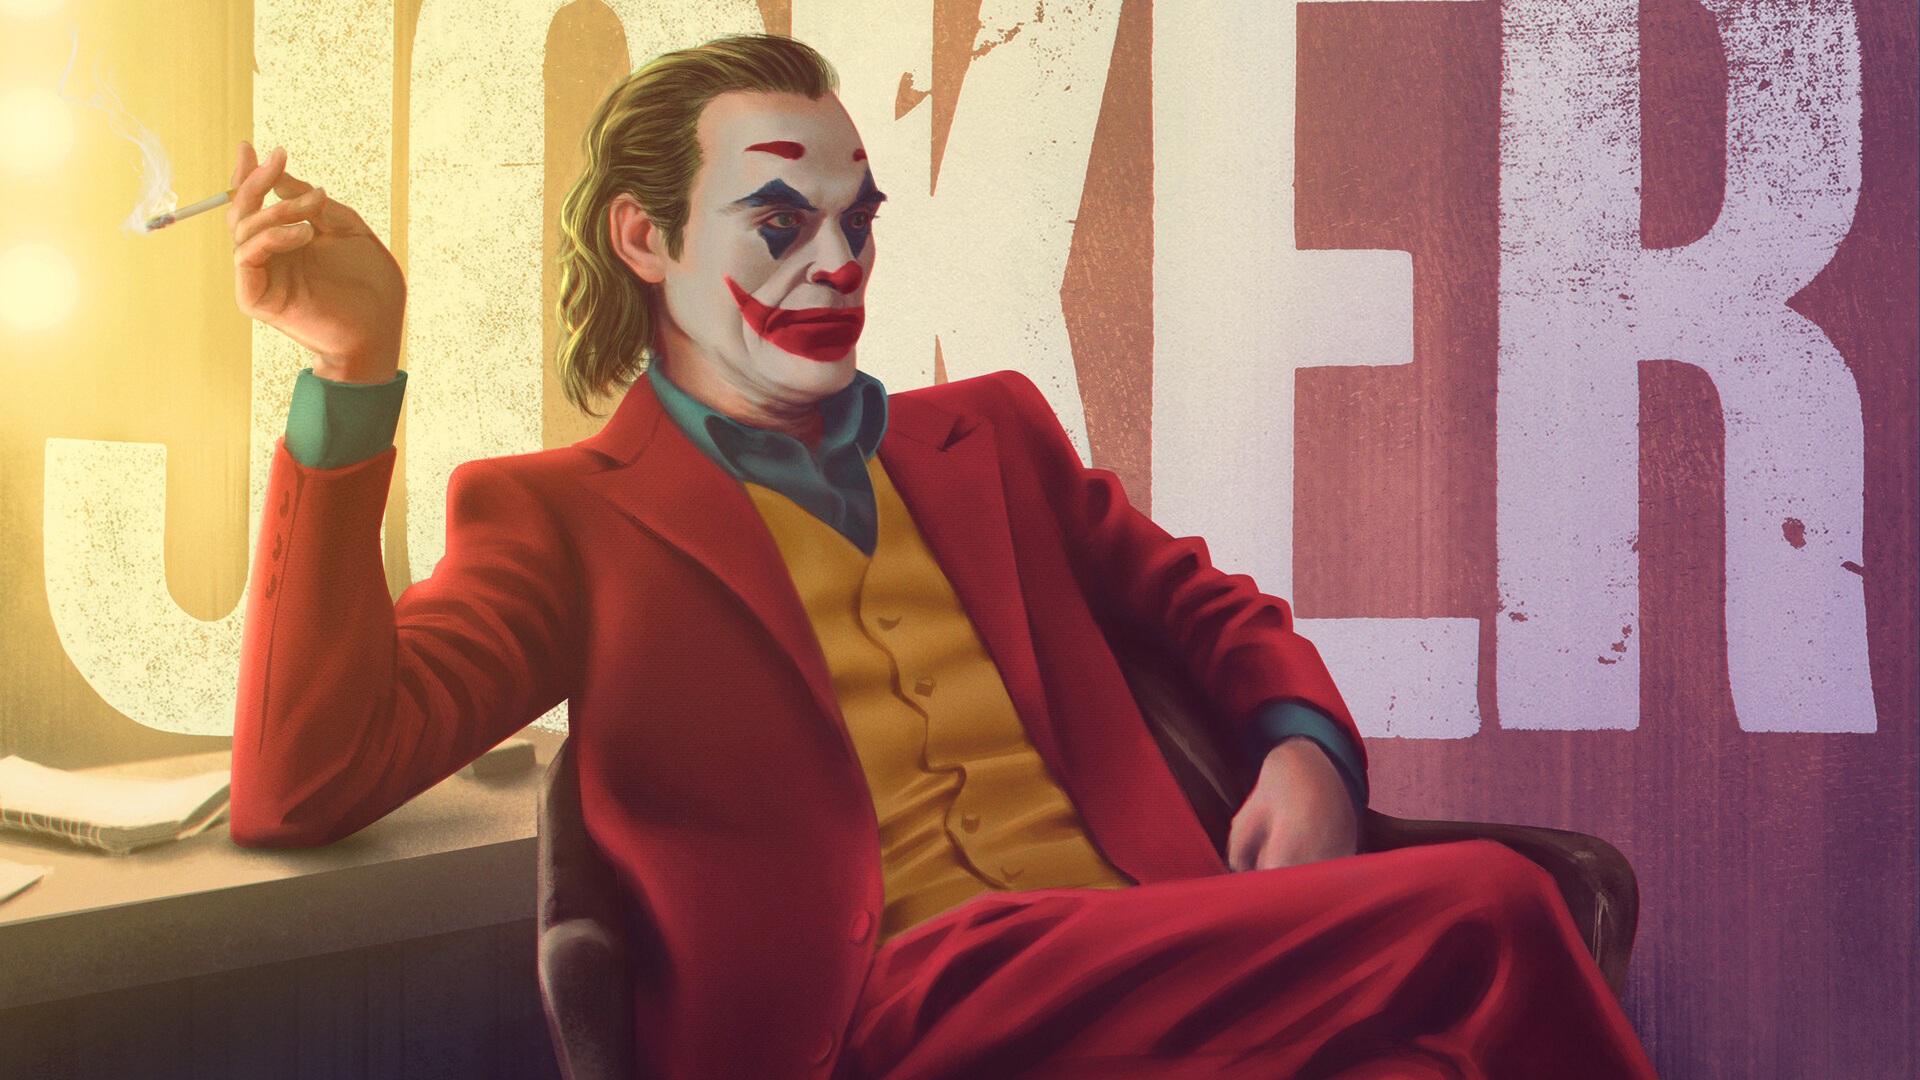 Joker Joaquin Phoenix Sitting Wearing Red Dress With Background Of Joker Painting On Wall HD Joker Wallpaper